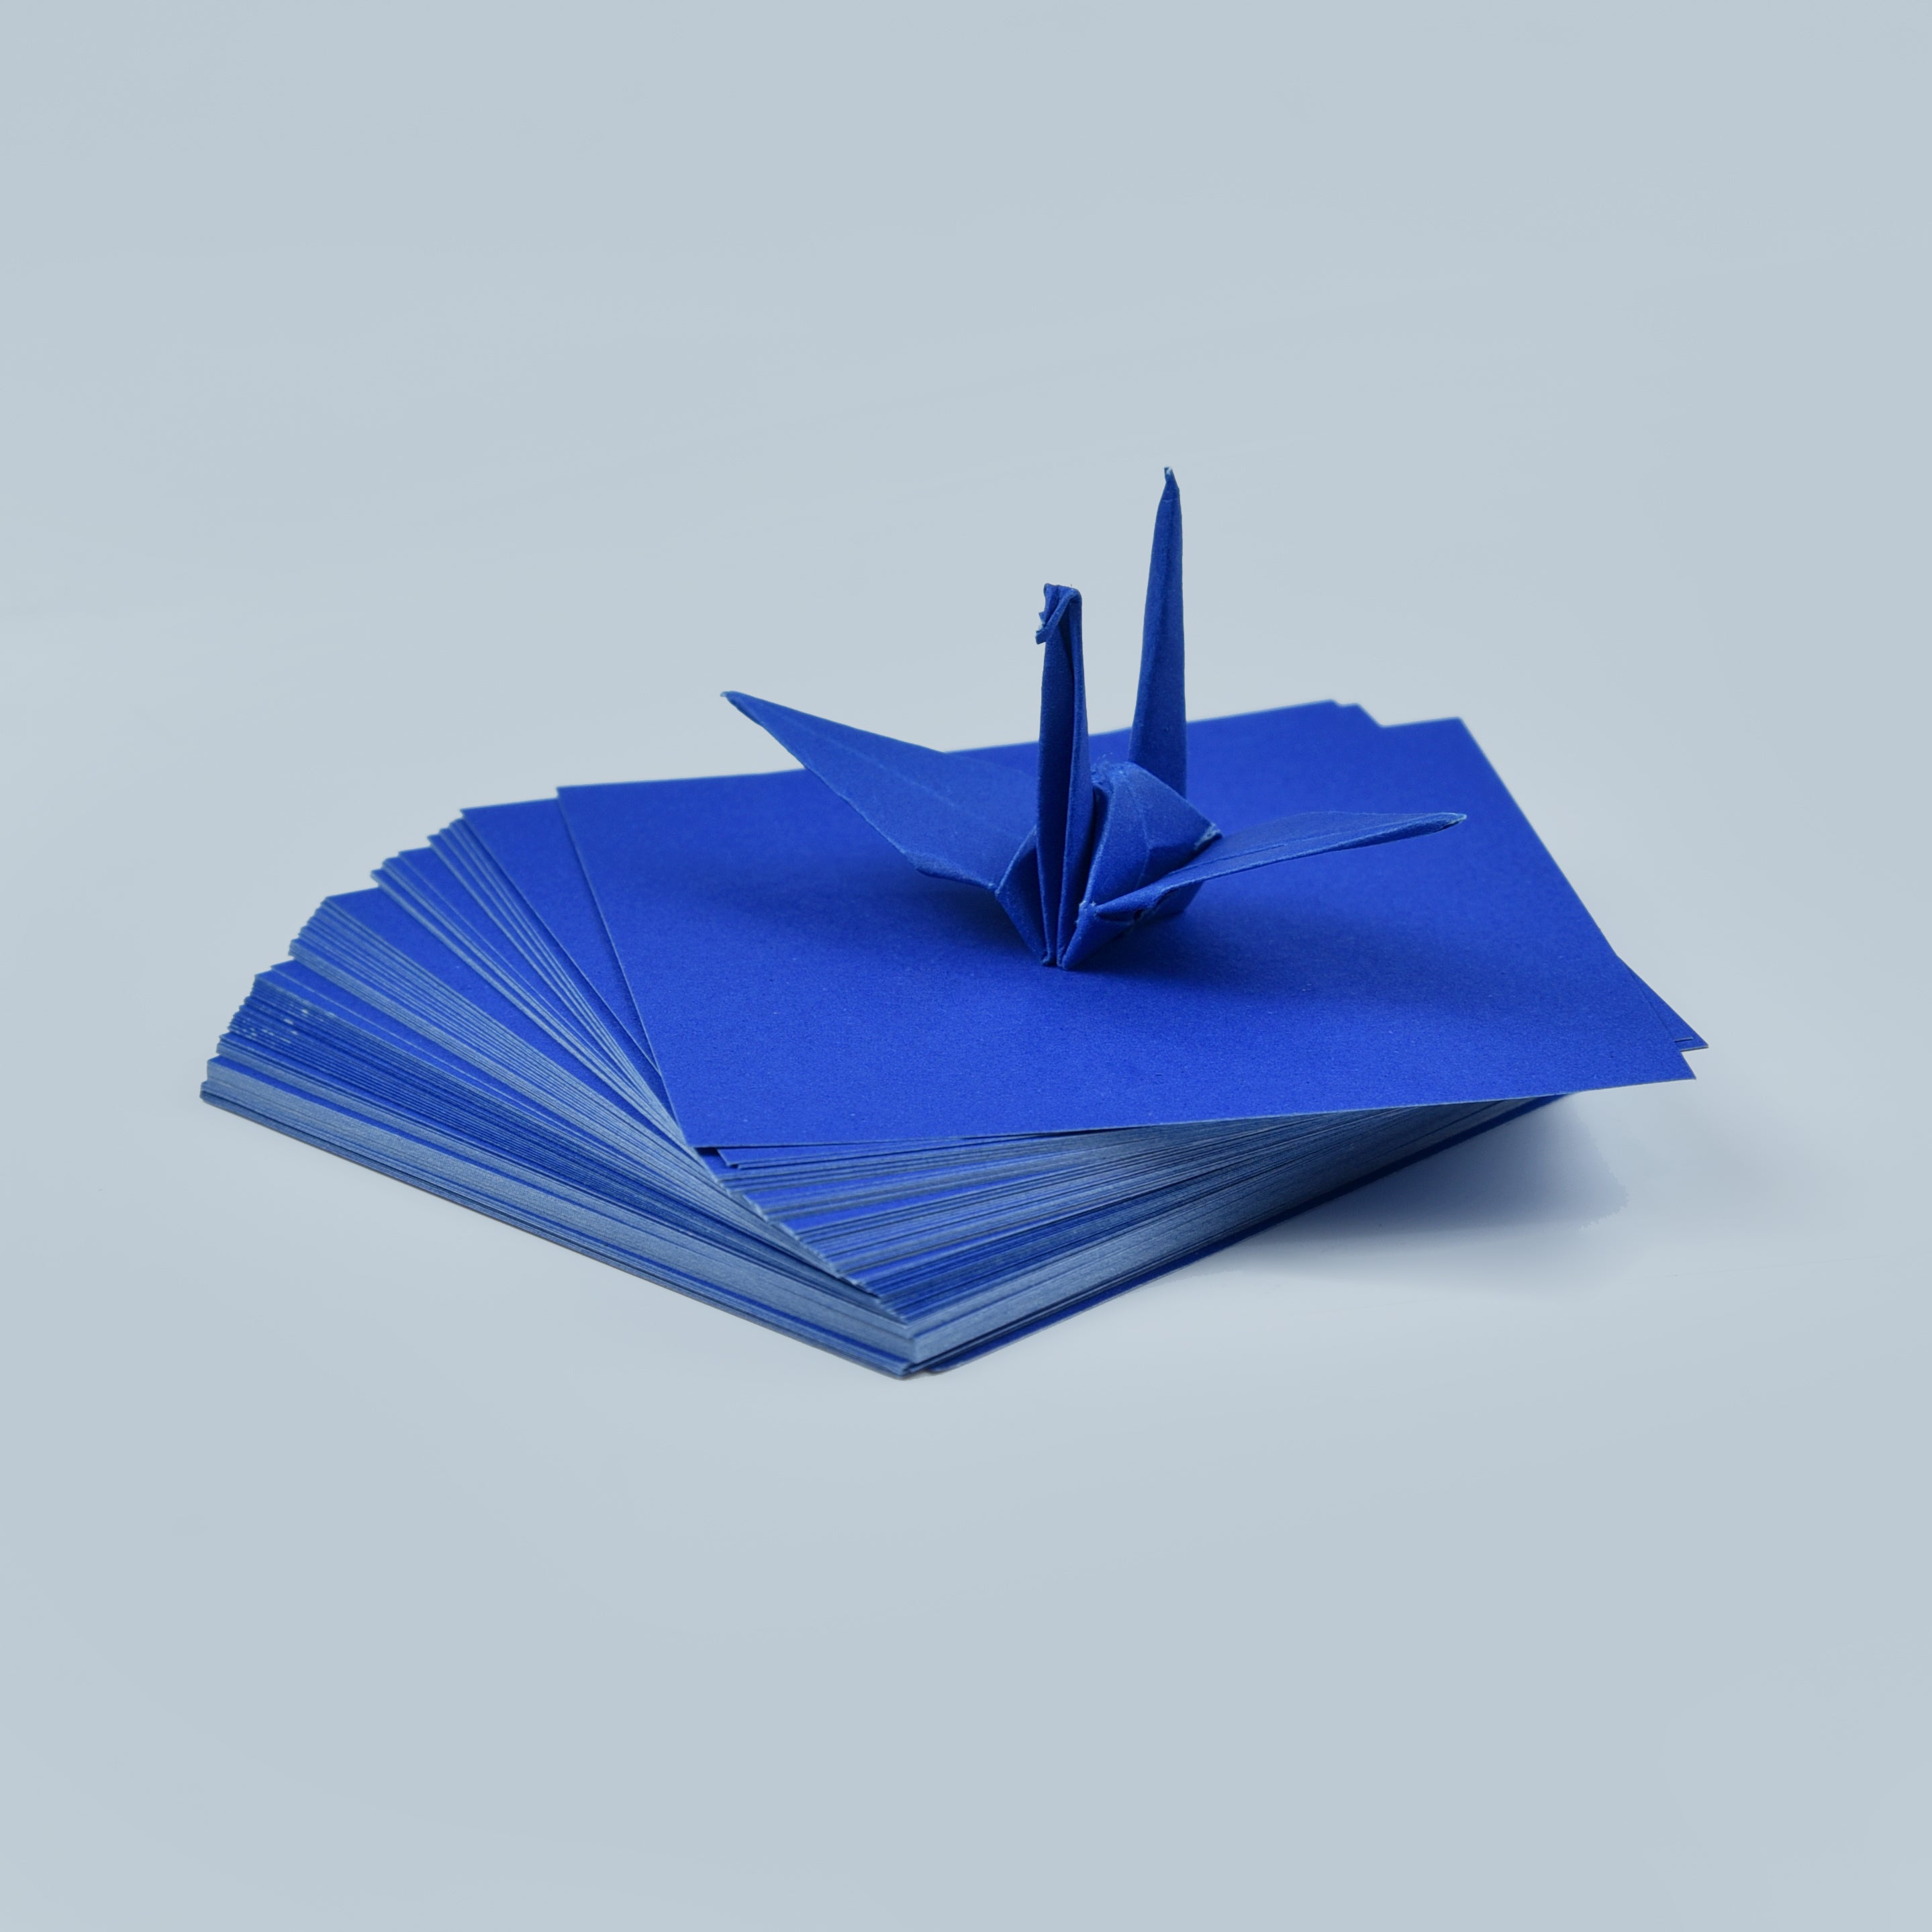 100 Hojas de Papel Origami - 3x3 pulgadas - Paquete de Papel Cuadrado para Plegar, Grullas de Origami y Decoración - S20